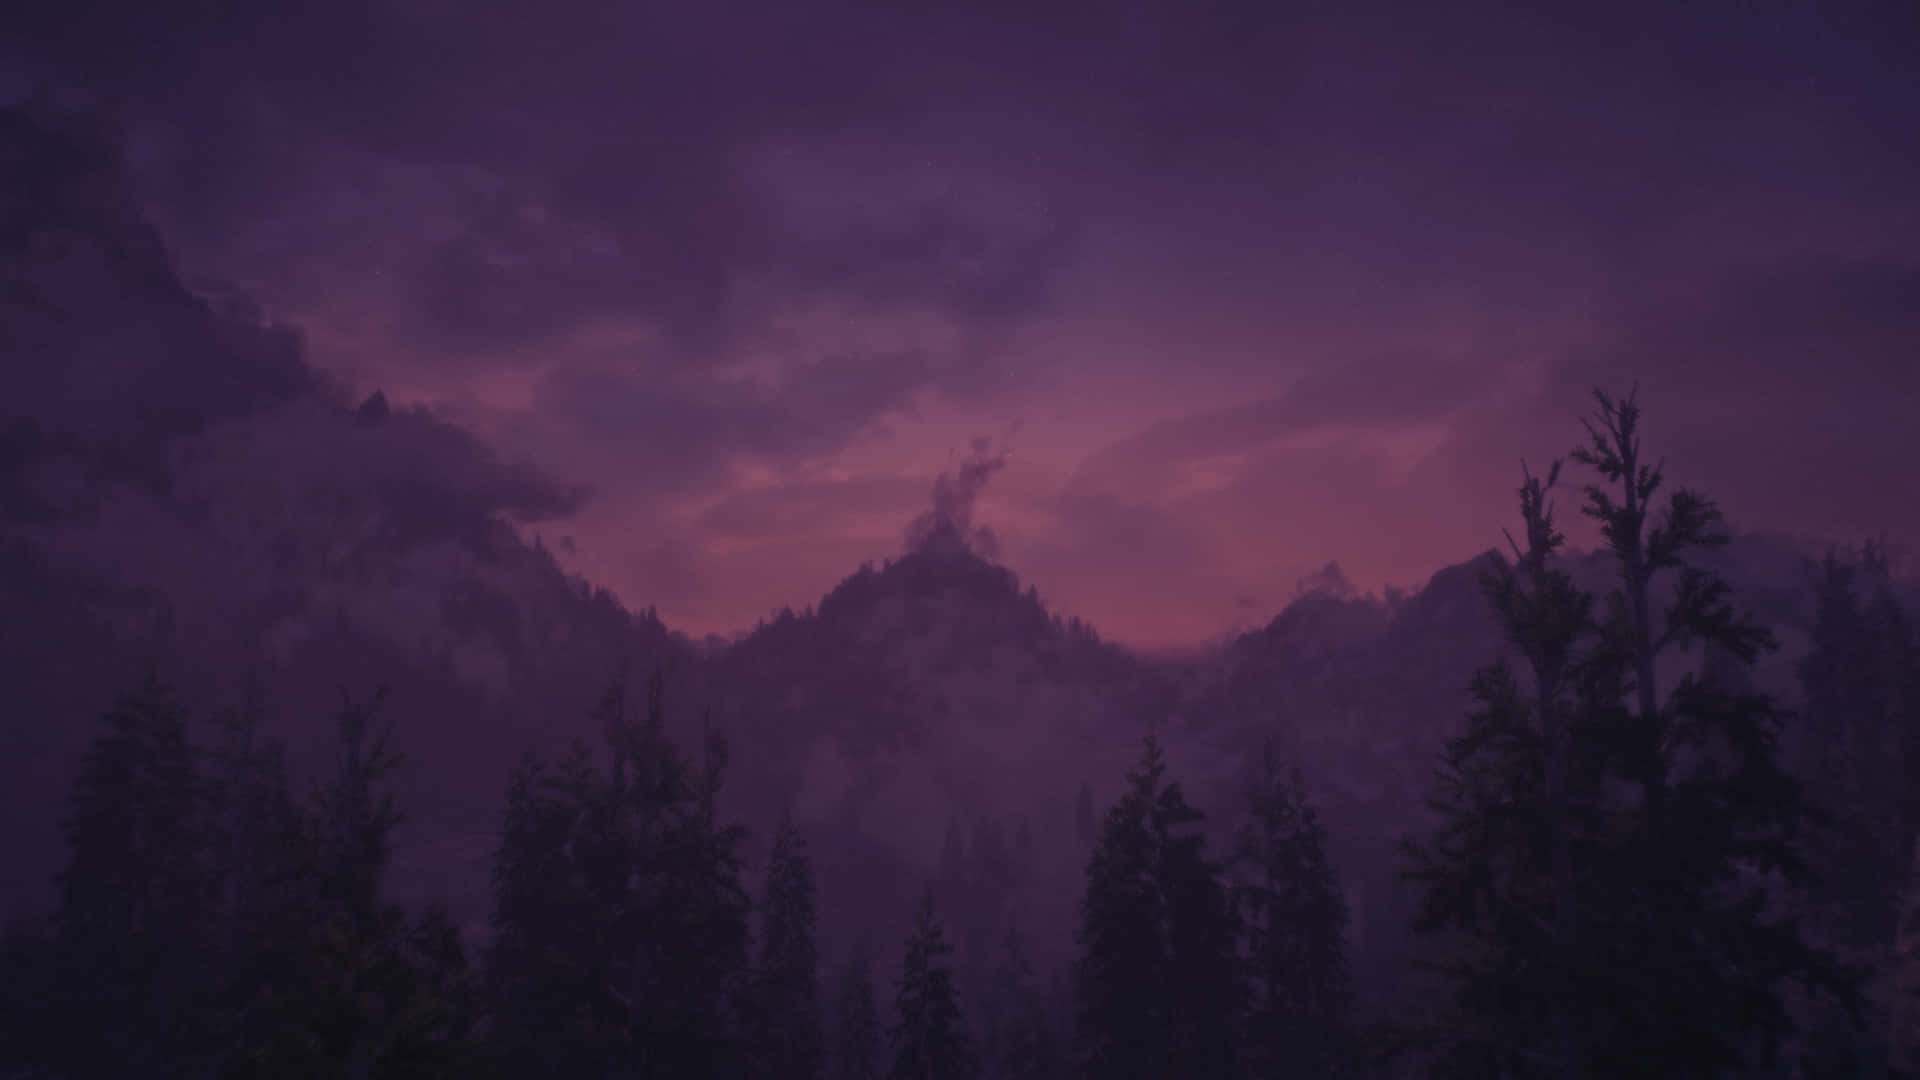 Paisajede Montaña Oscuro Y Brumoso De Skyrim Fondo de pantalla